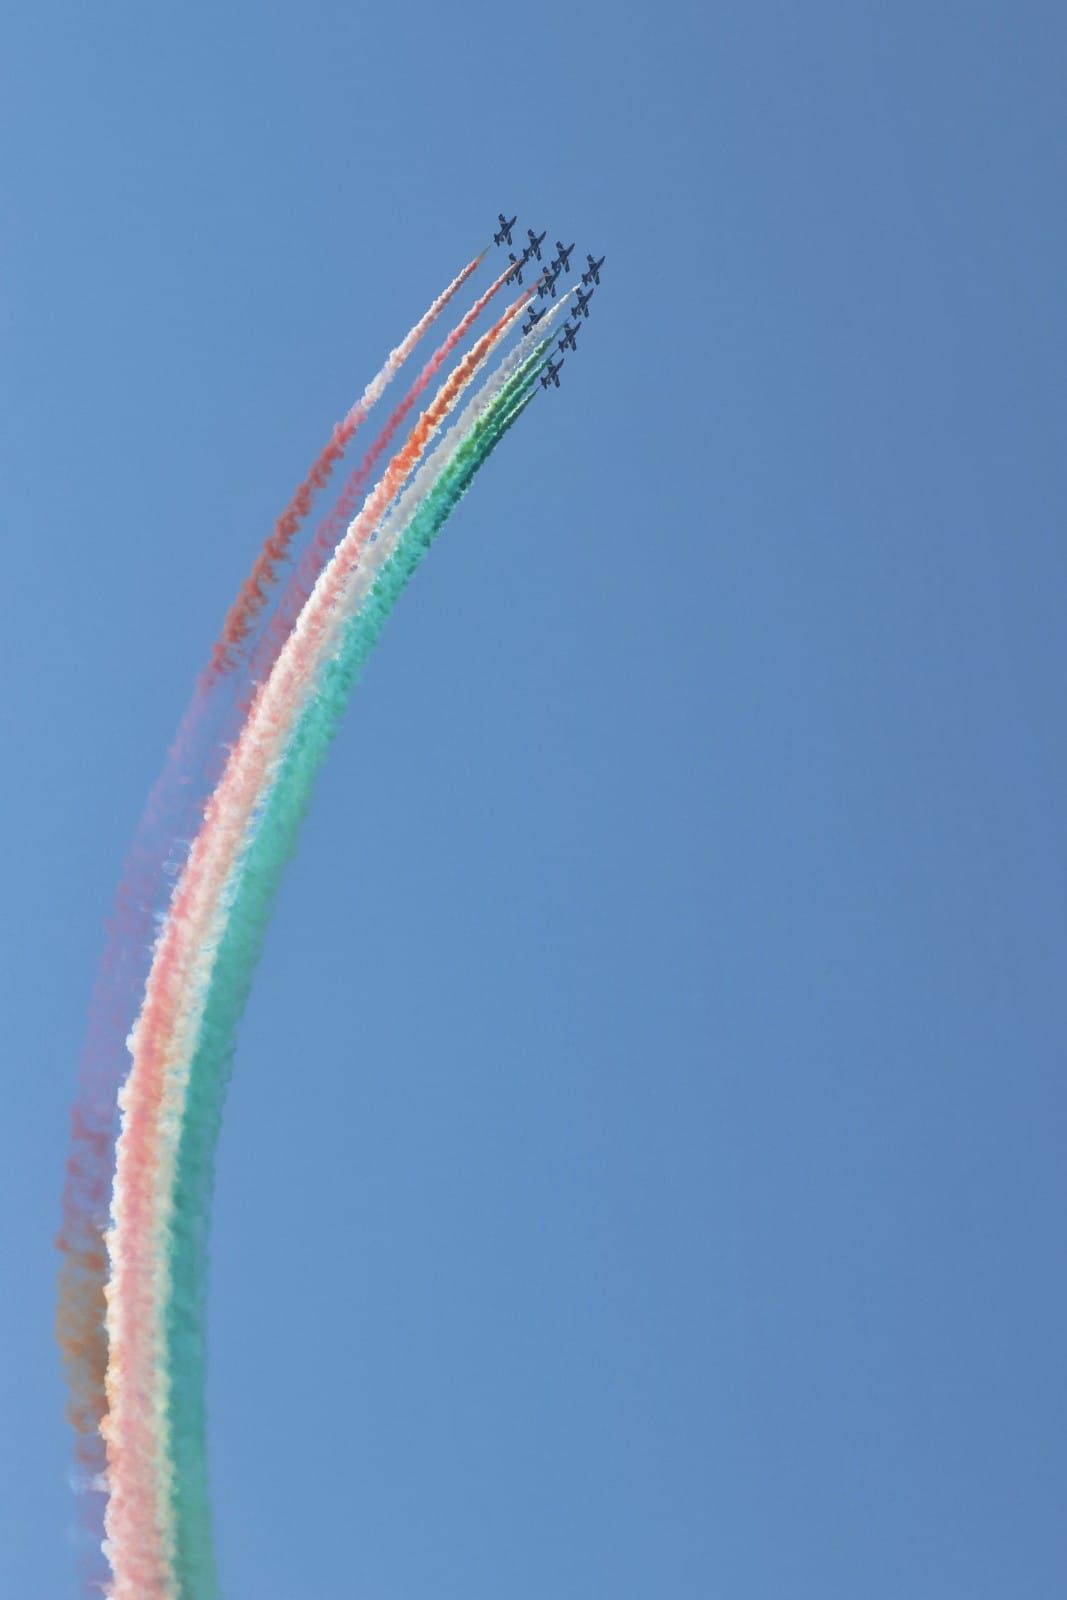 Centenario aeronautica militare - Frecce tricolori